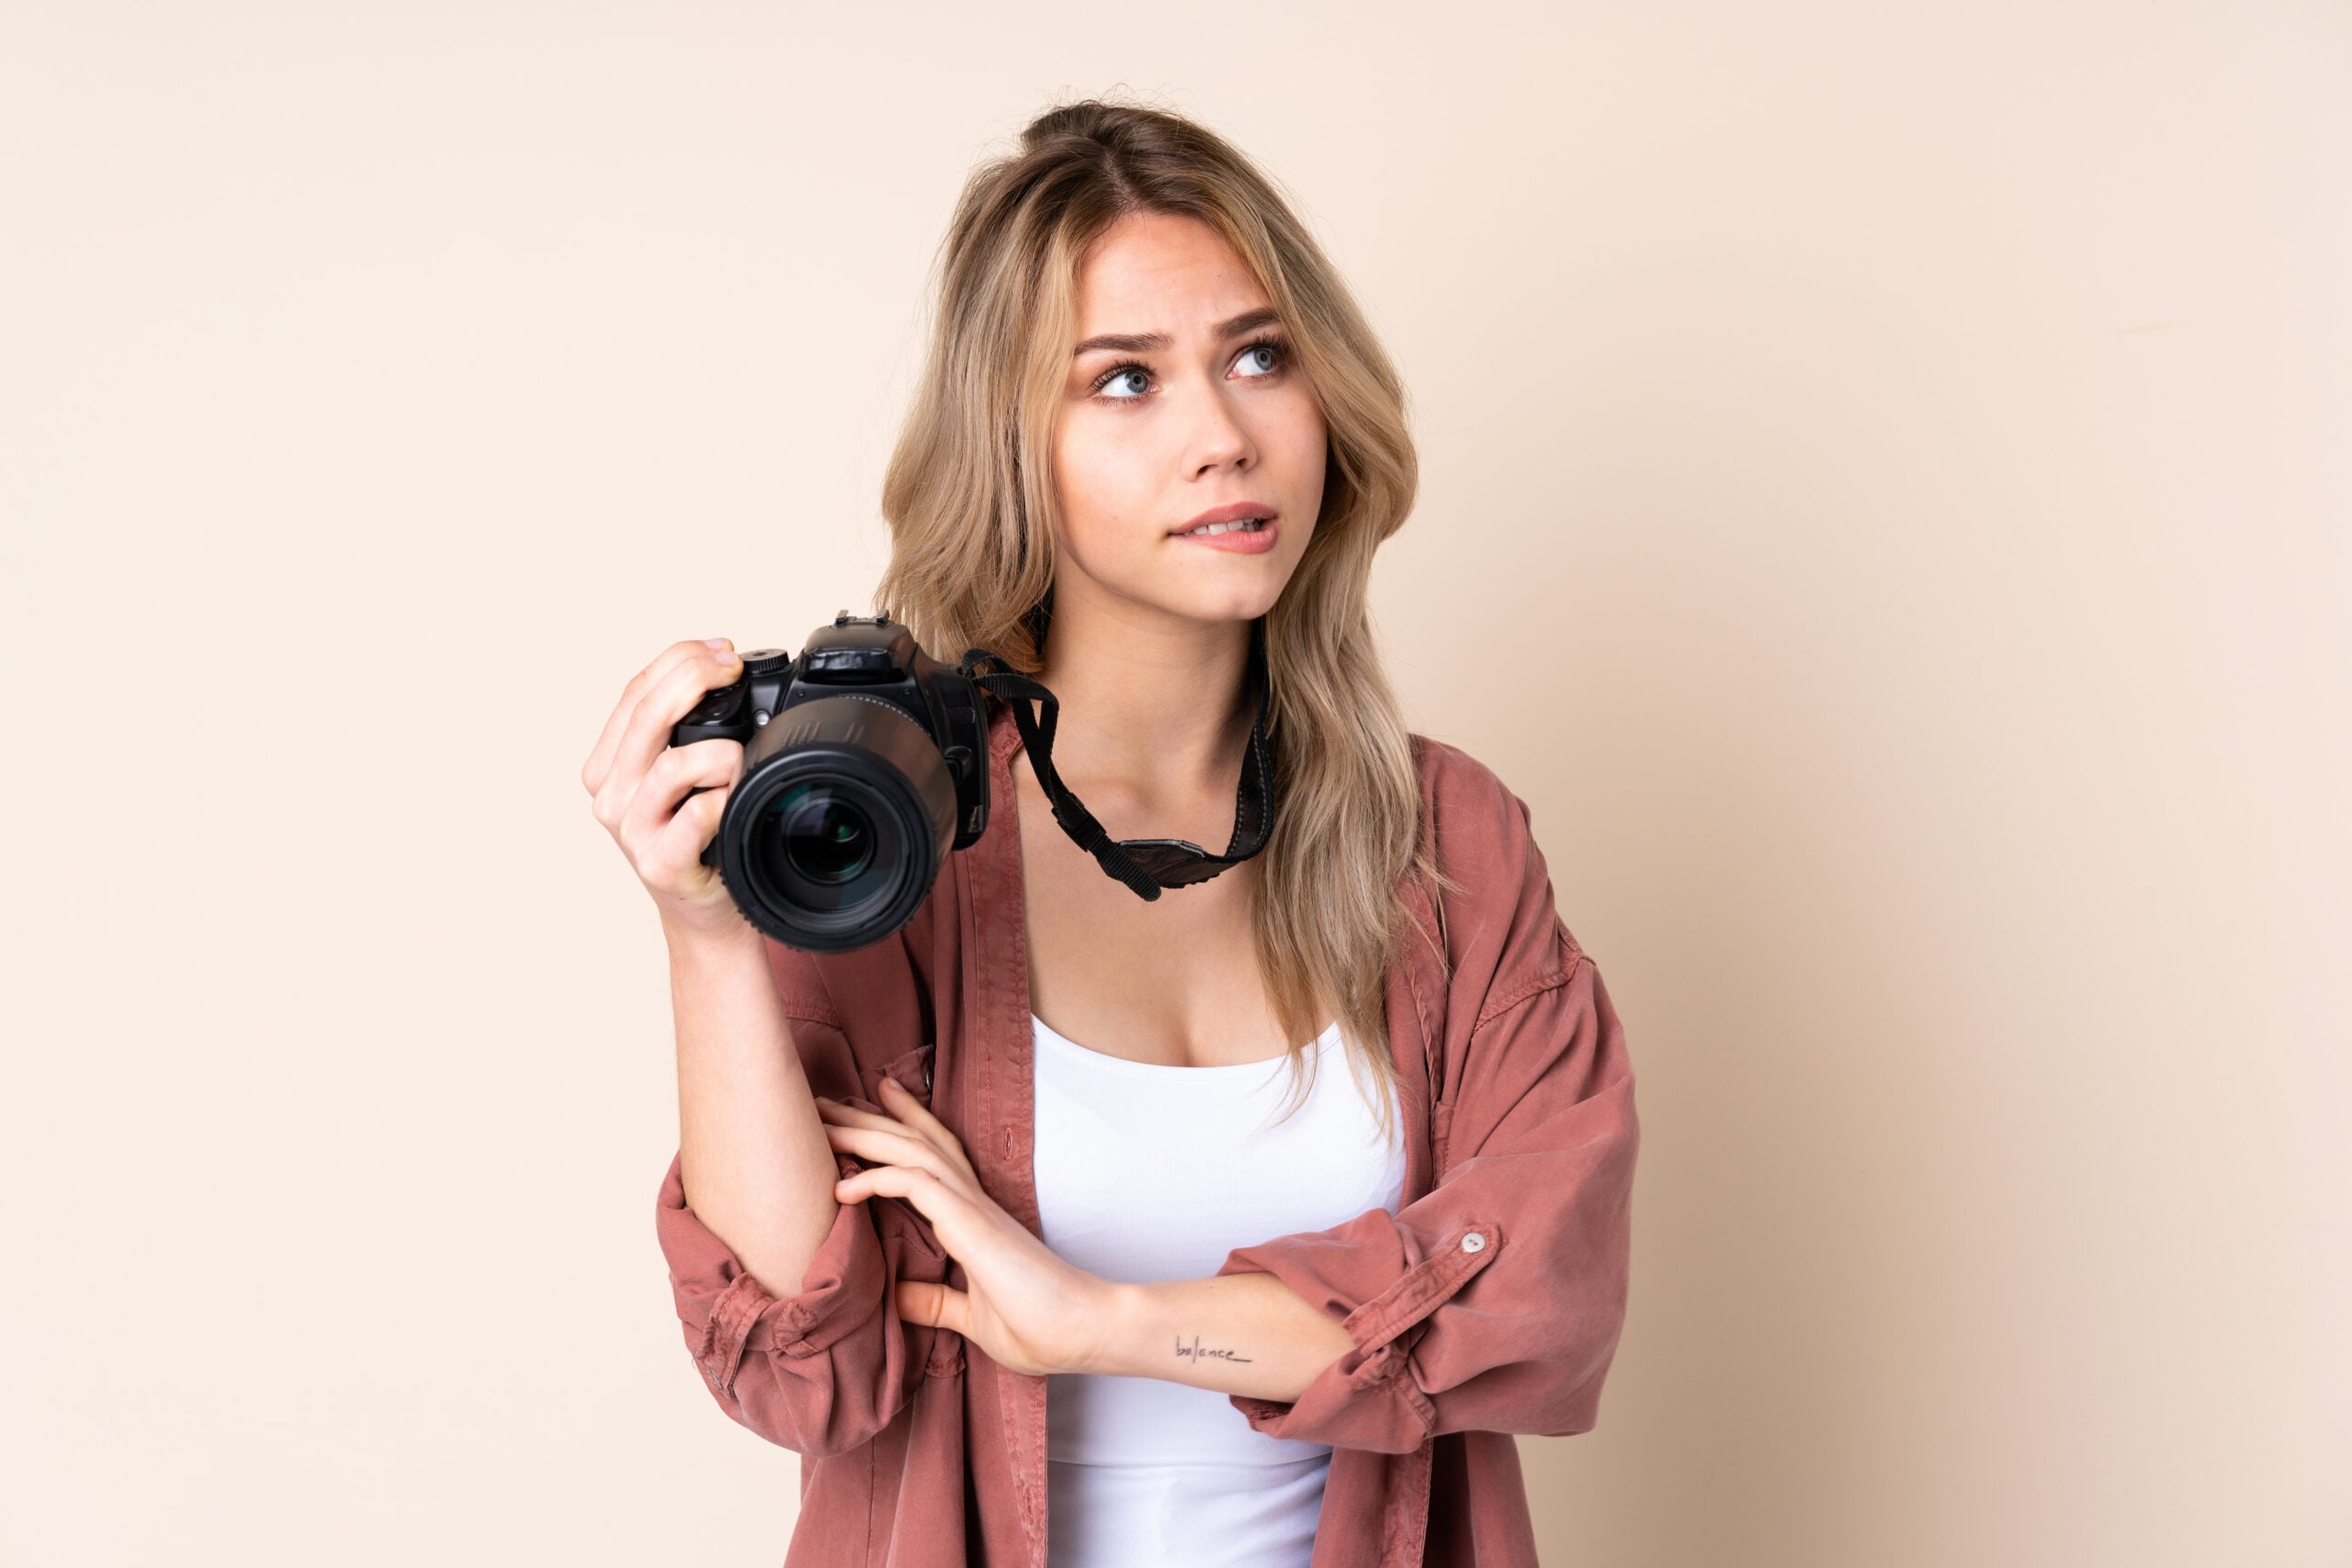 Junge Frau Kamera ueberlegt scaled - Fotografie-Recht: Was darf ich alles fotografieren?